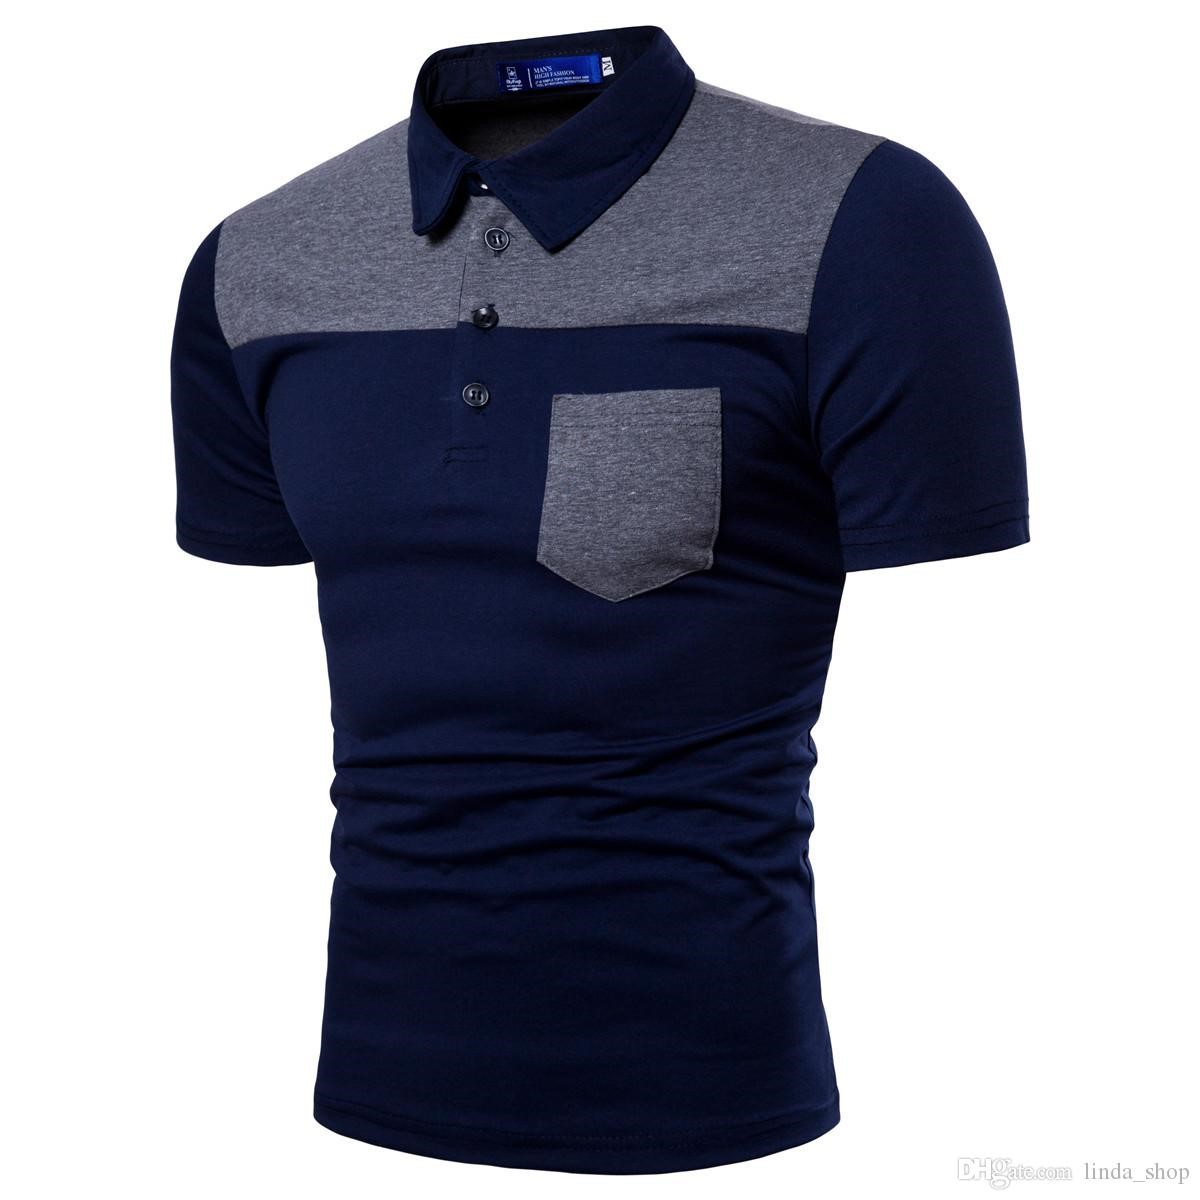 Polo Shirt – Shami Textiles